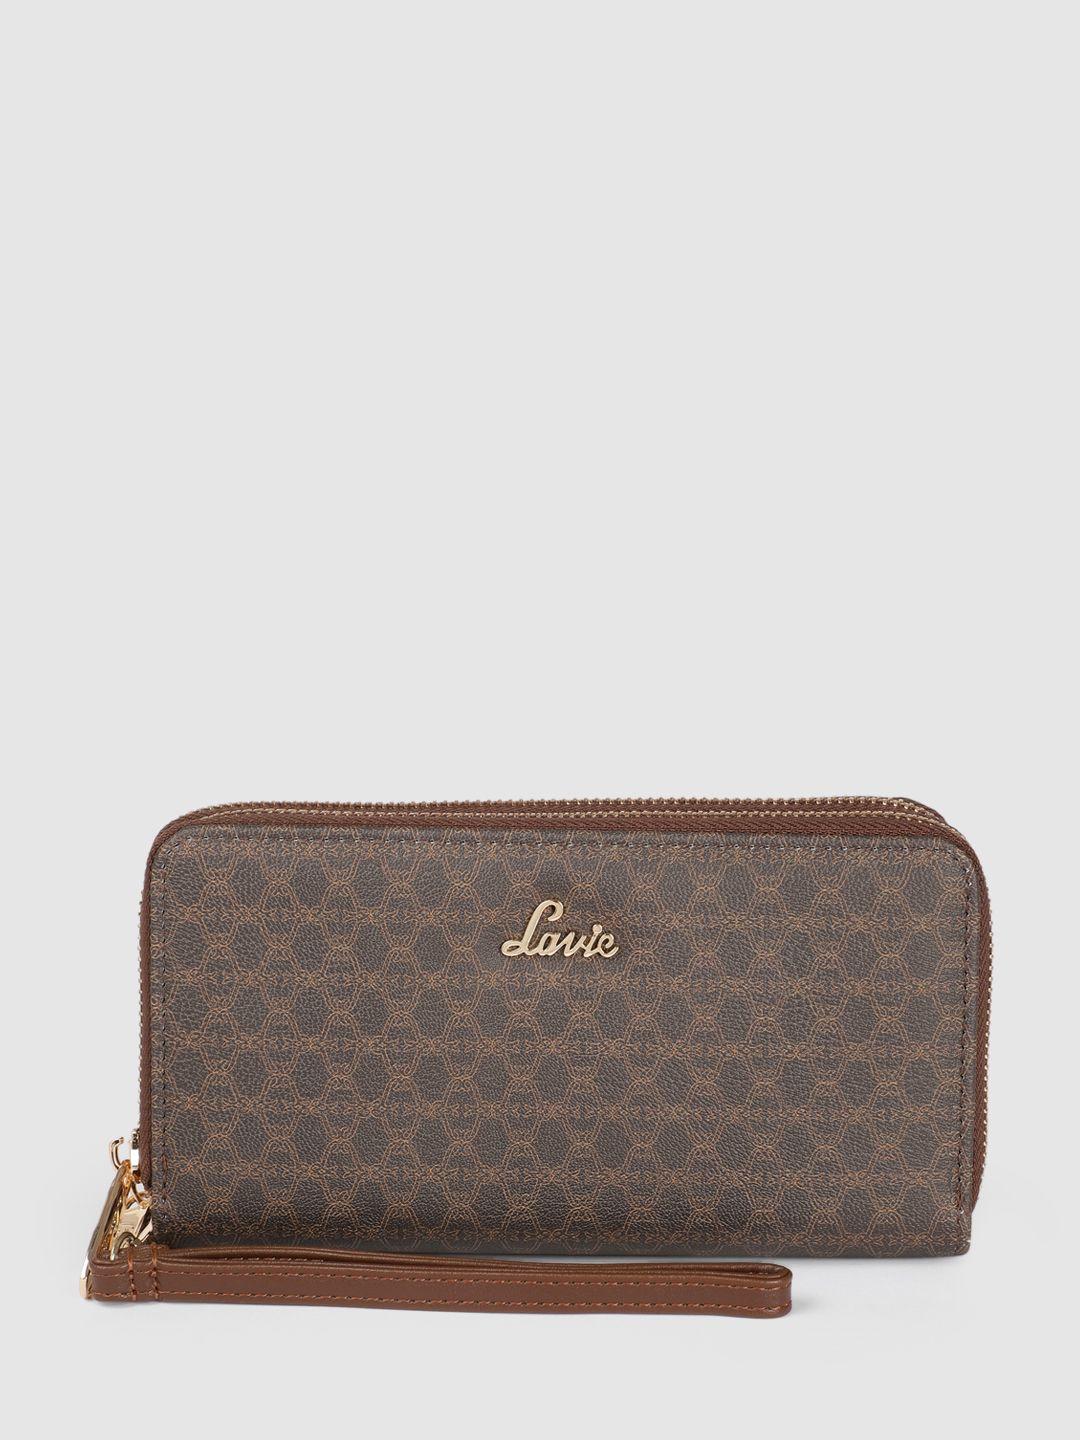 lavie-women-brand-logo-printed-zip-around-wallet